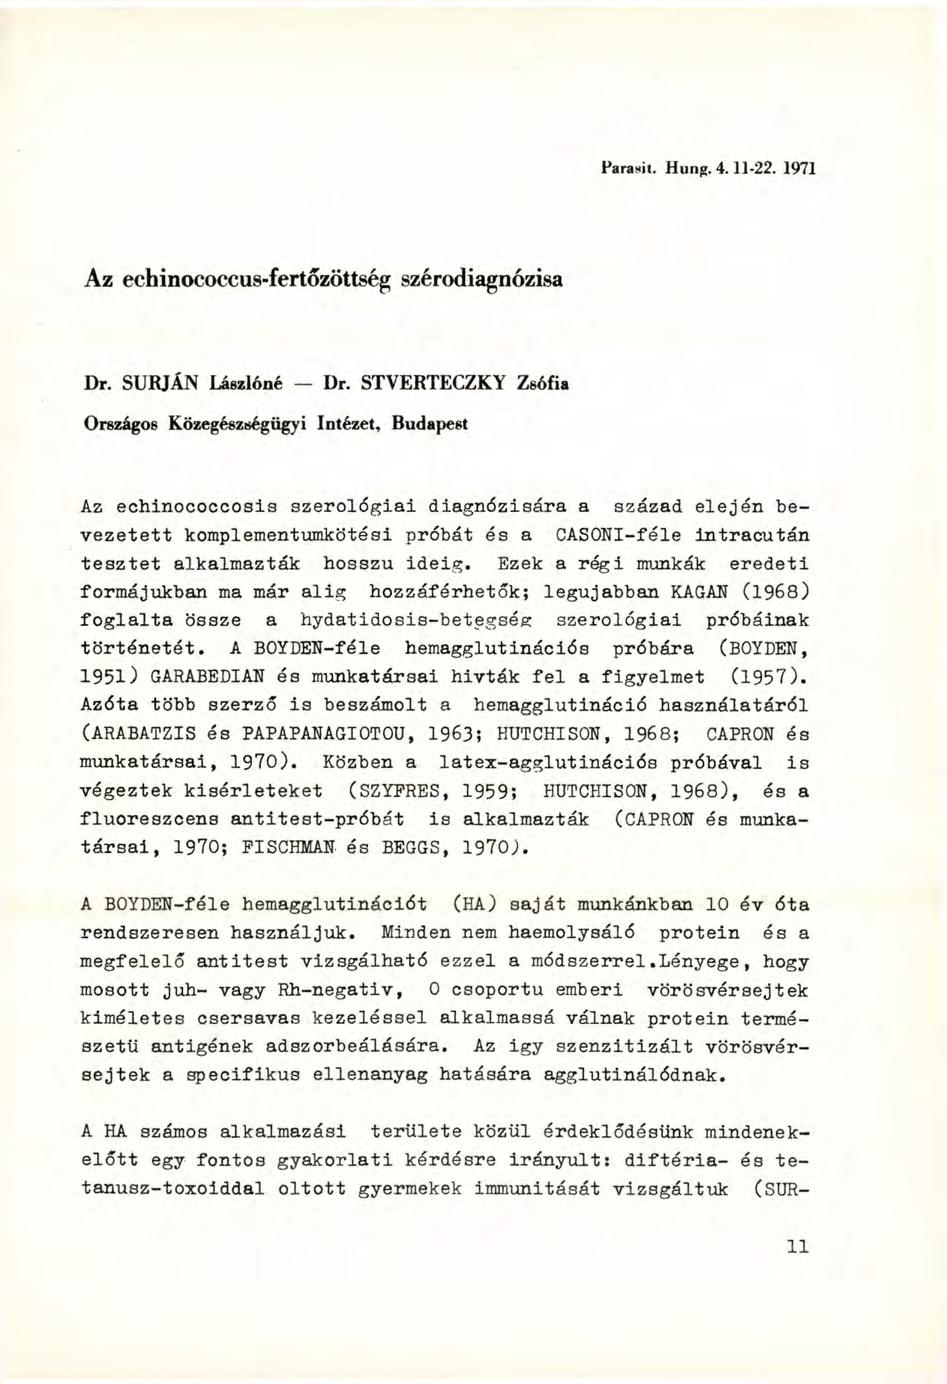 Paranit. Hung. 4.11-22. 1971 Az echinococcus-fertőzöttség szérodiagnózisa Dr. SURJÁN Lászlóné - Dr.